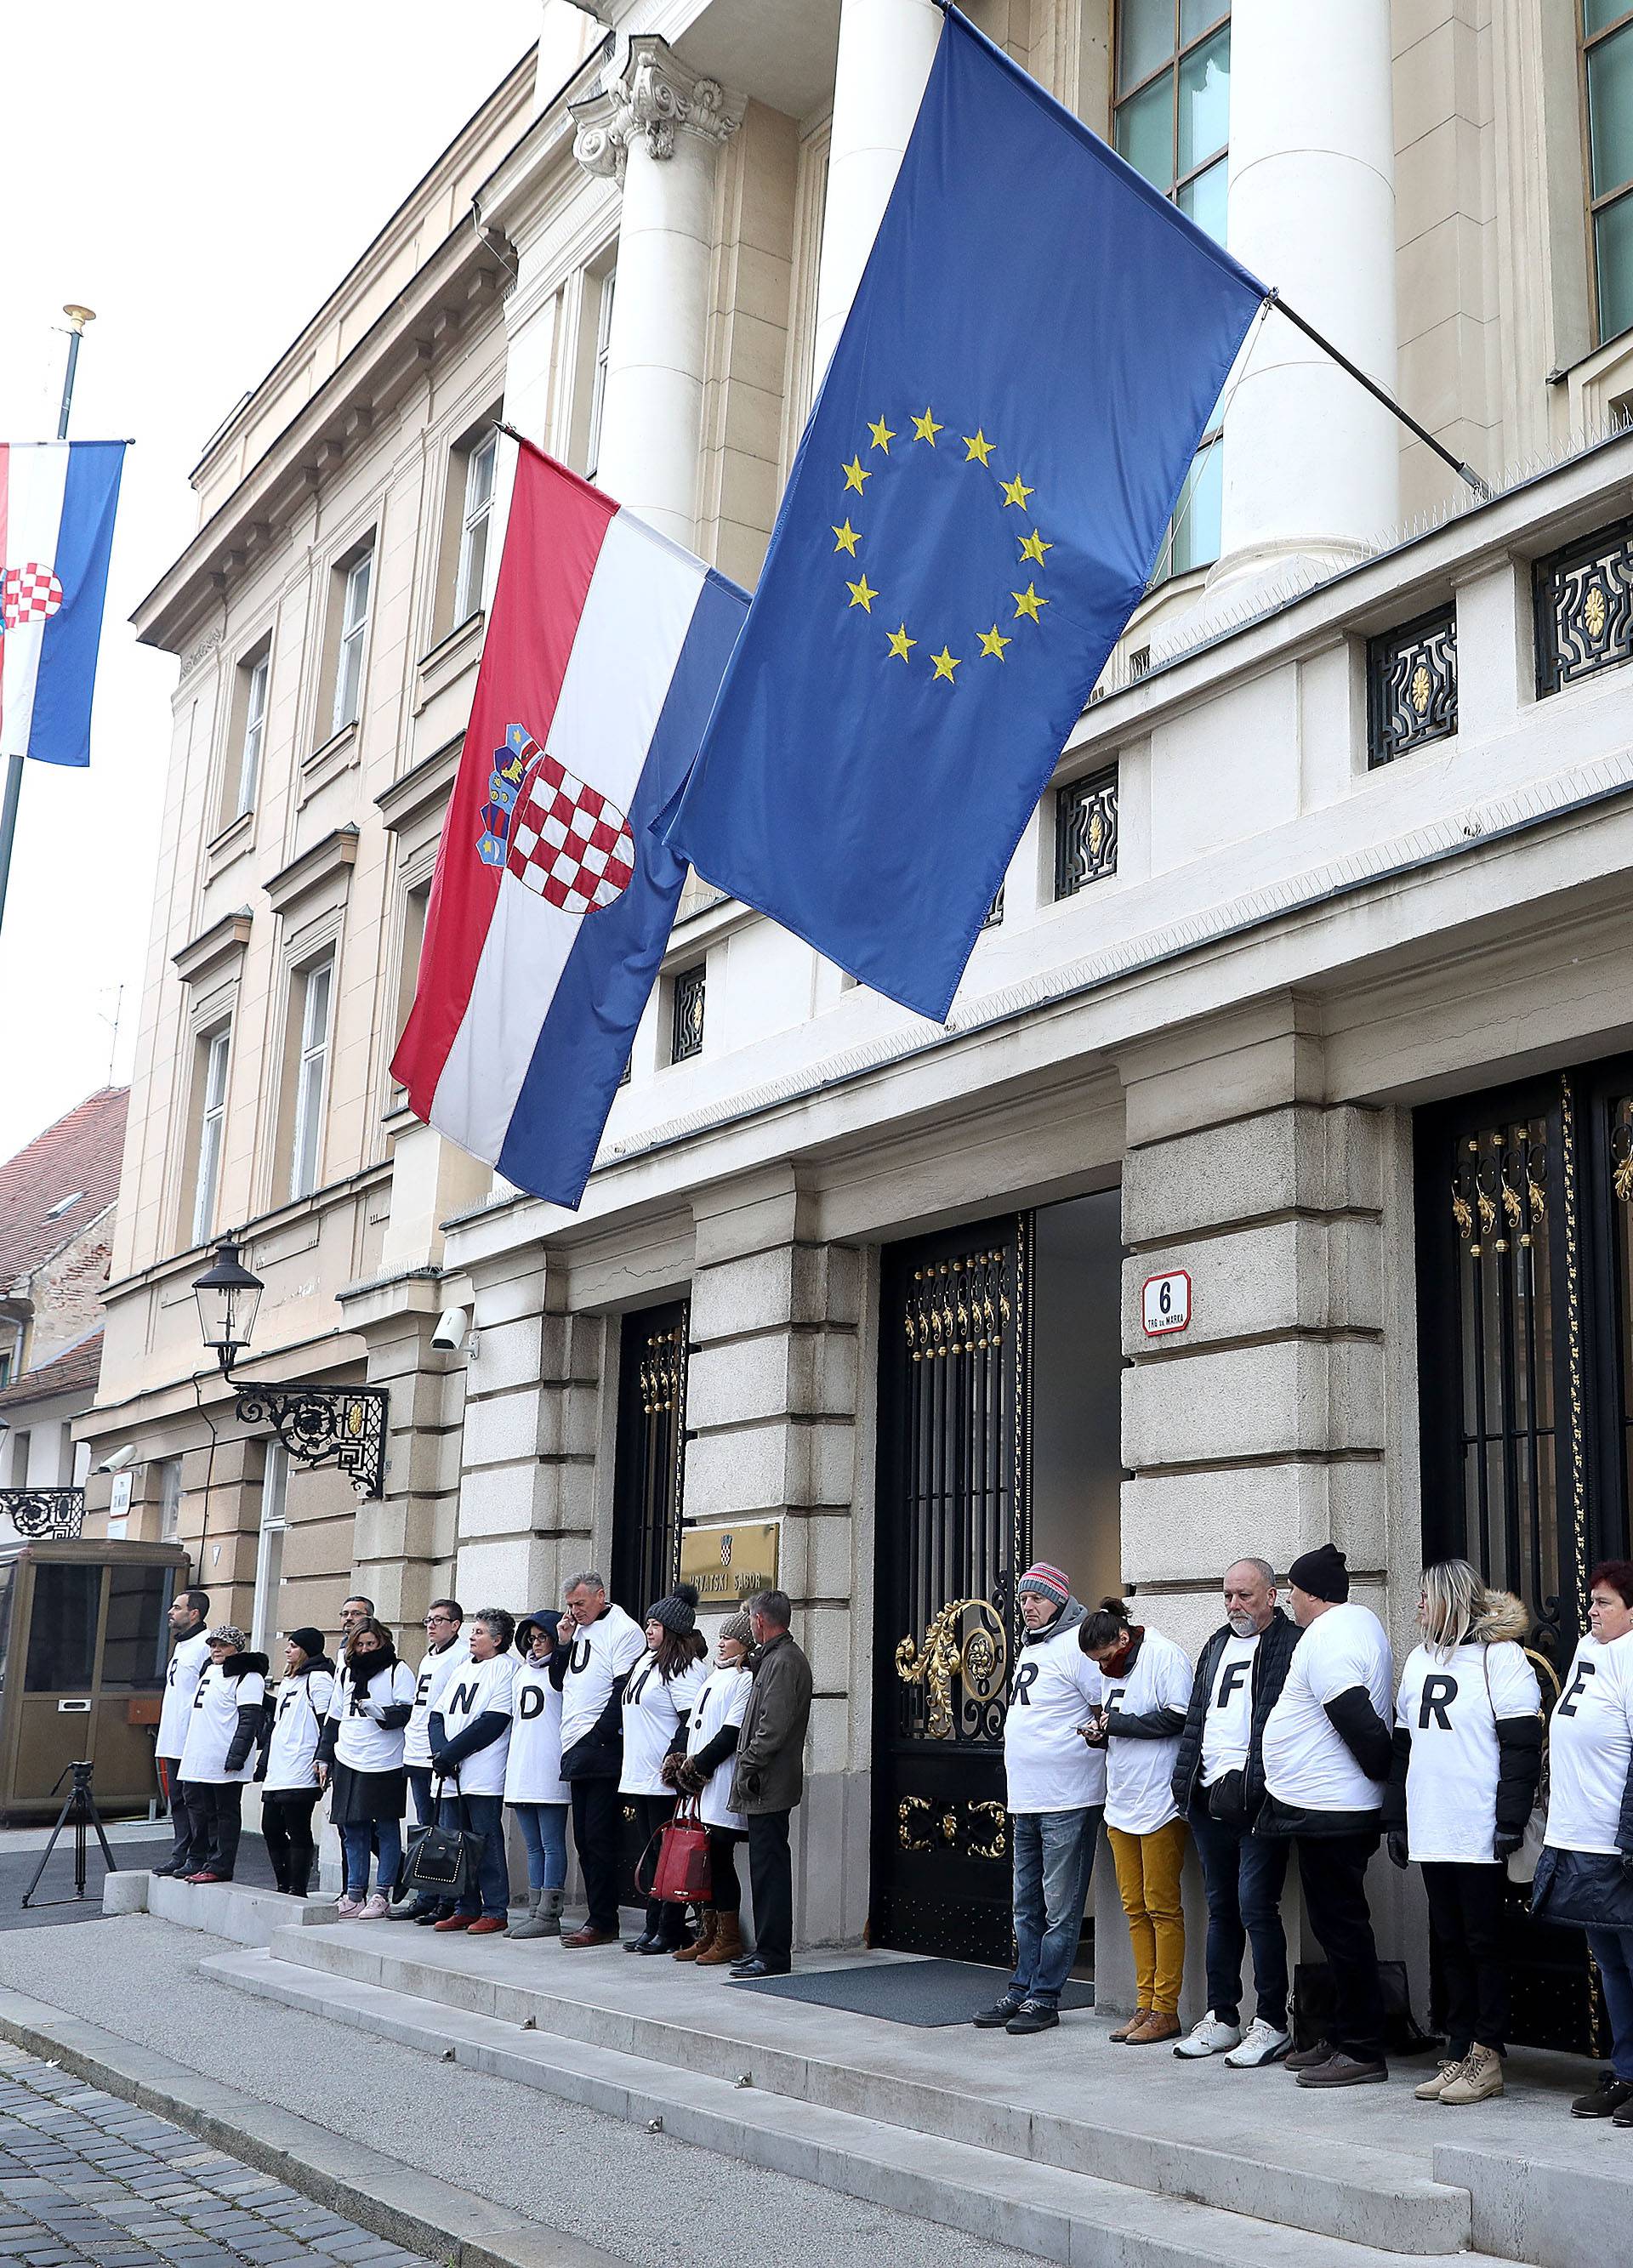 Zagreb: Sindikati i danas posvjeduju protiv mirovinske reforme